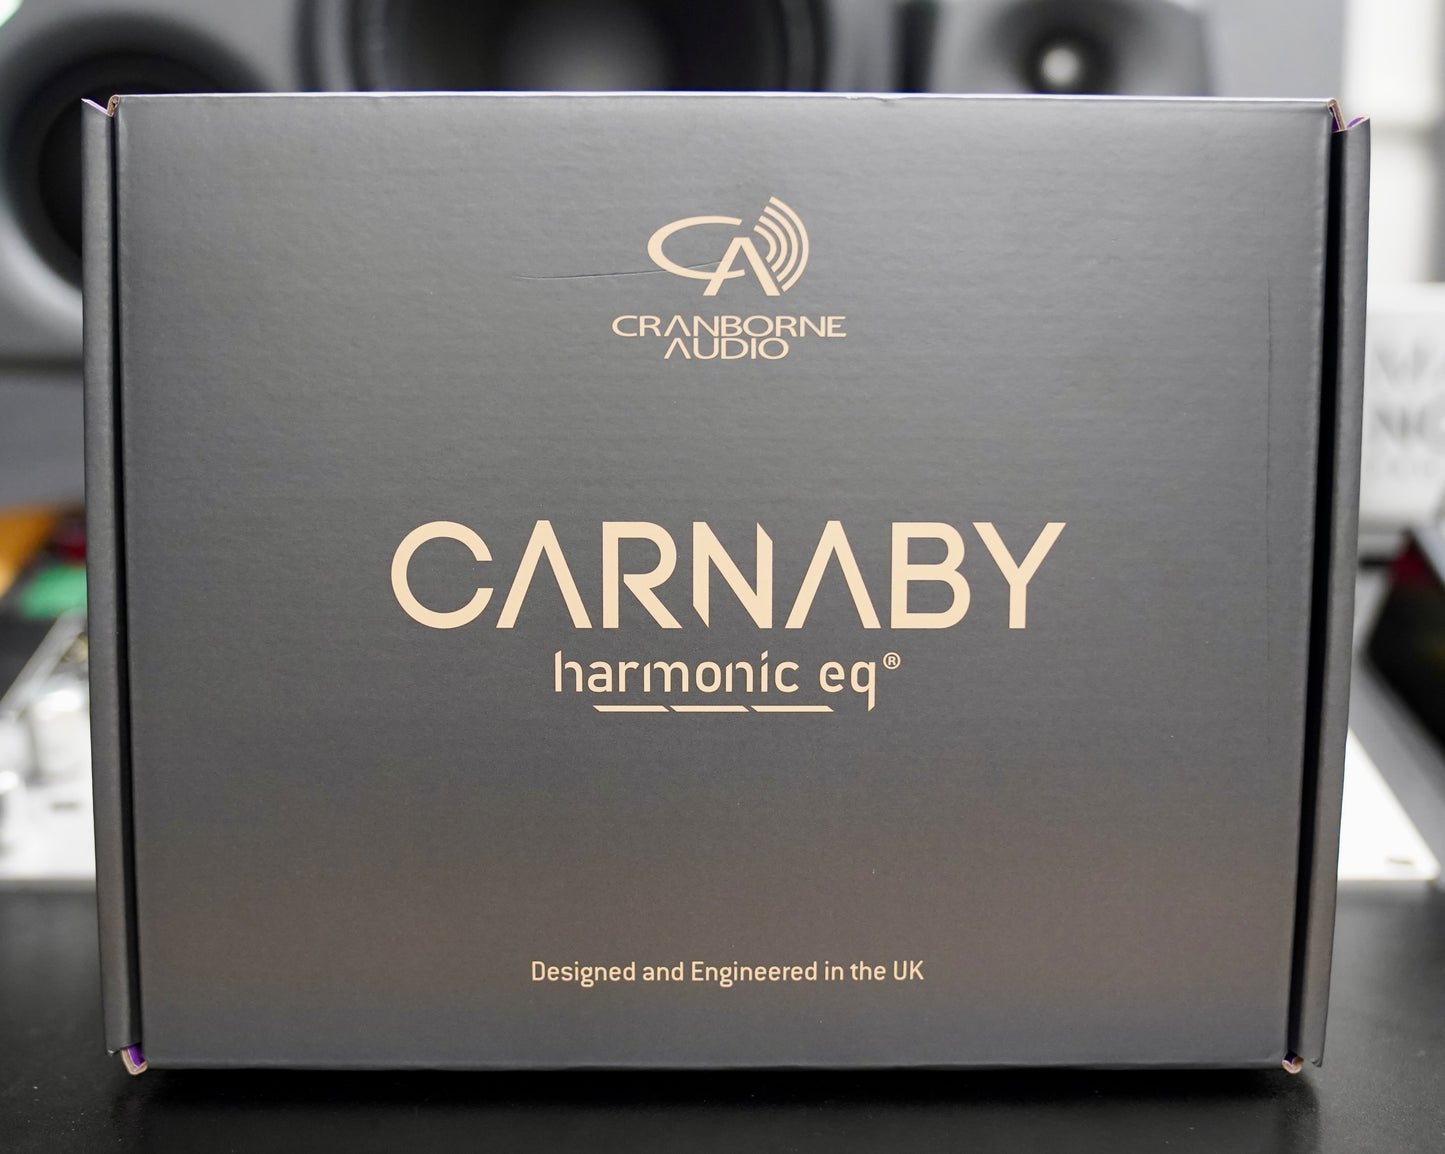 Cranborne Audio Carnaby 500 - New